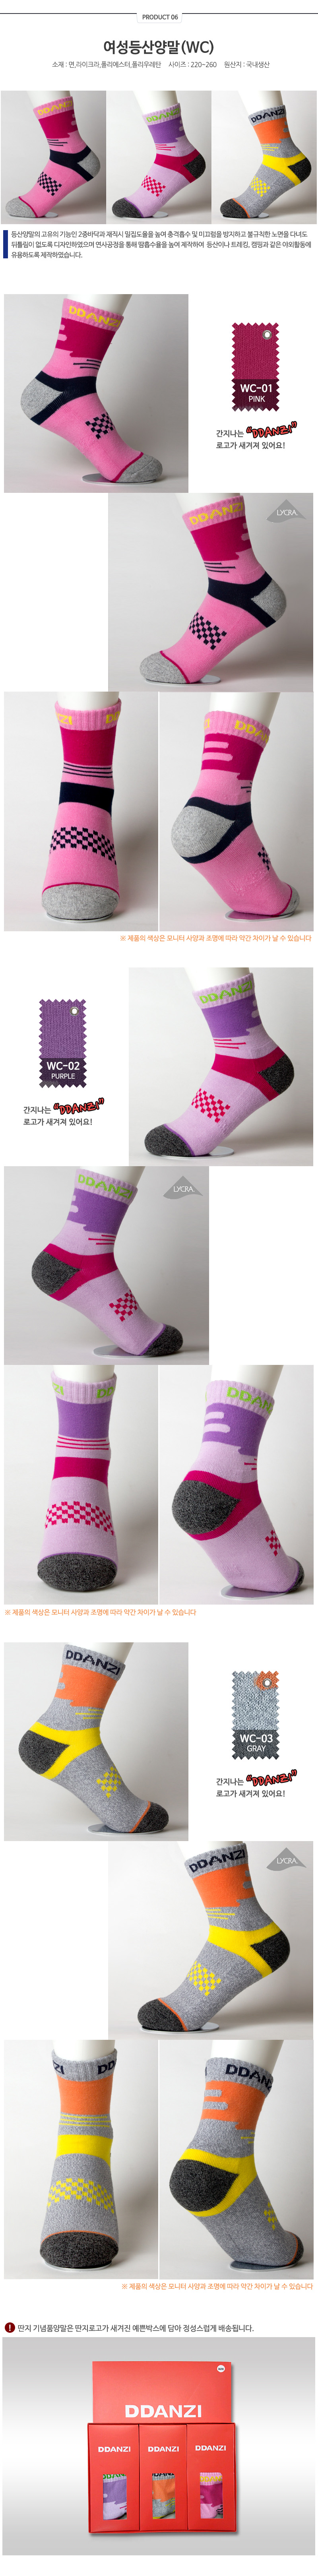 socks_06.jpg